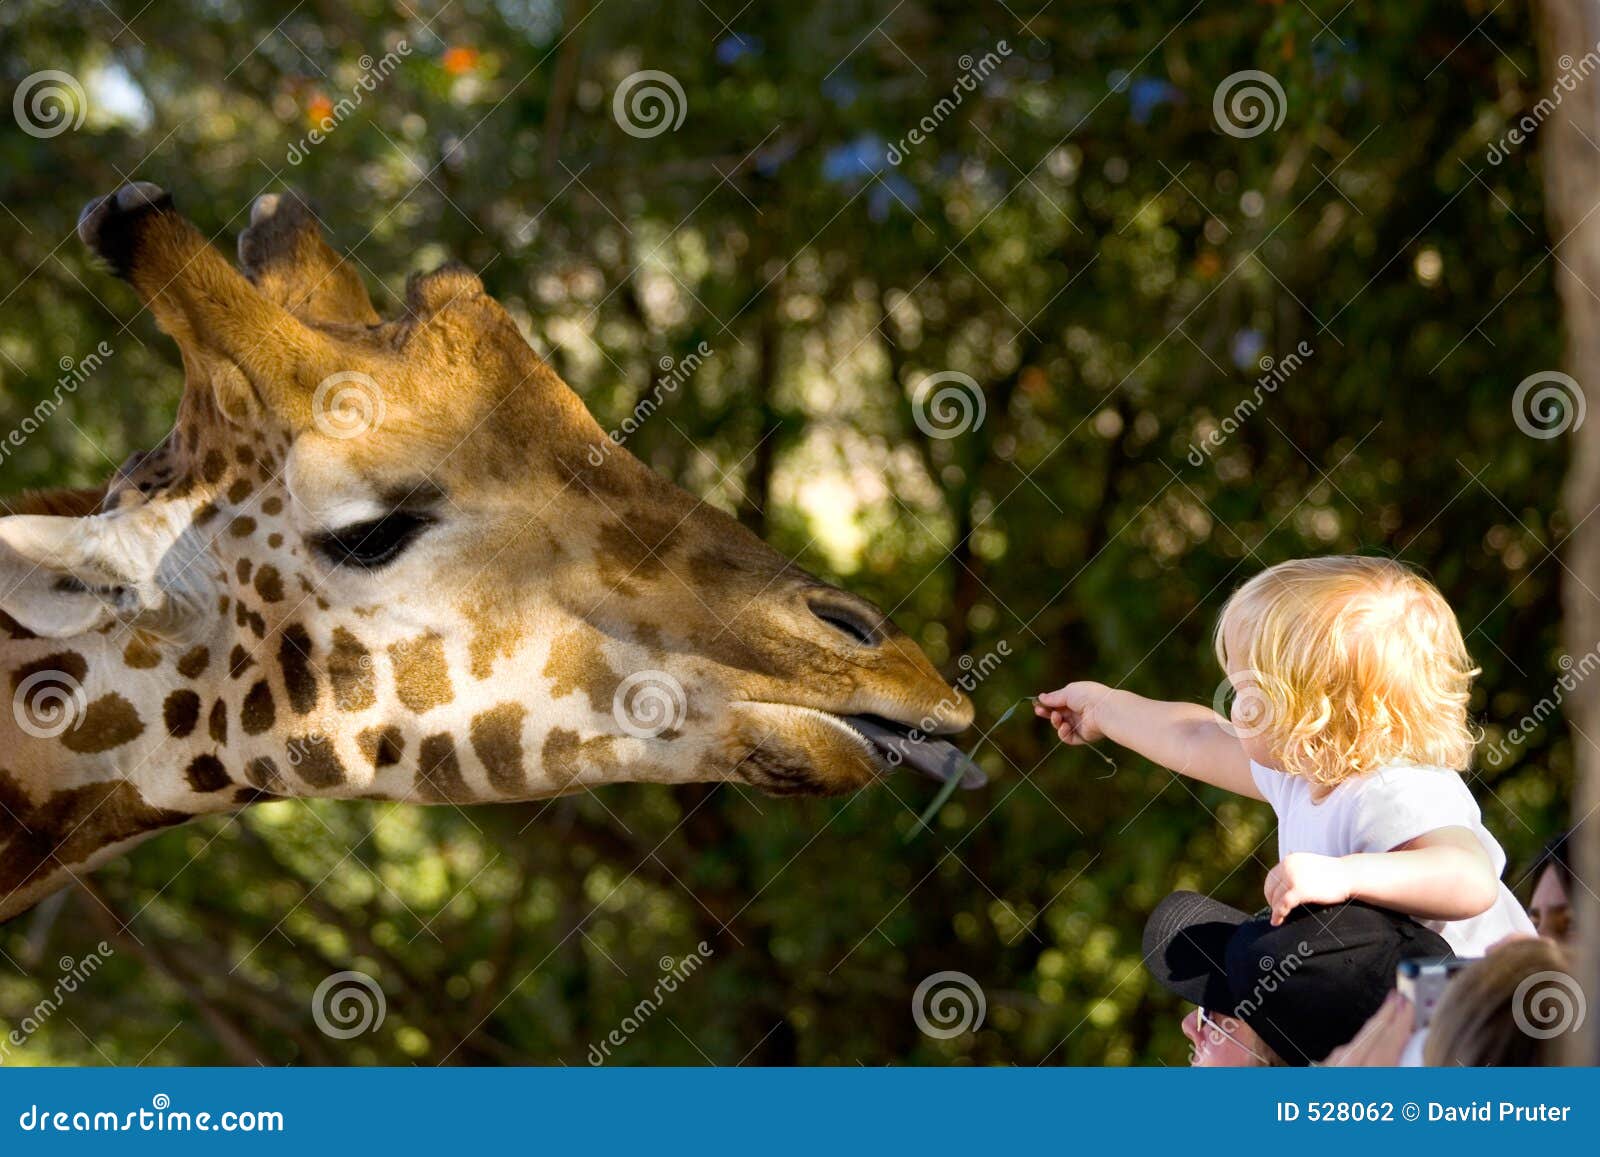 child feeding a giraffe